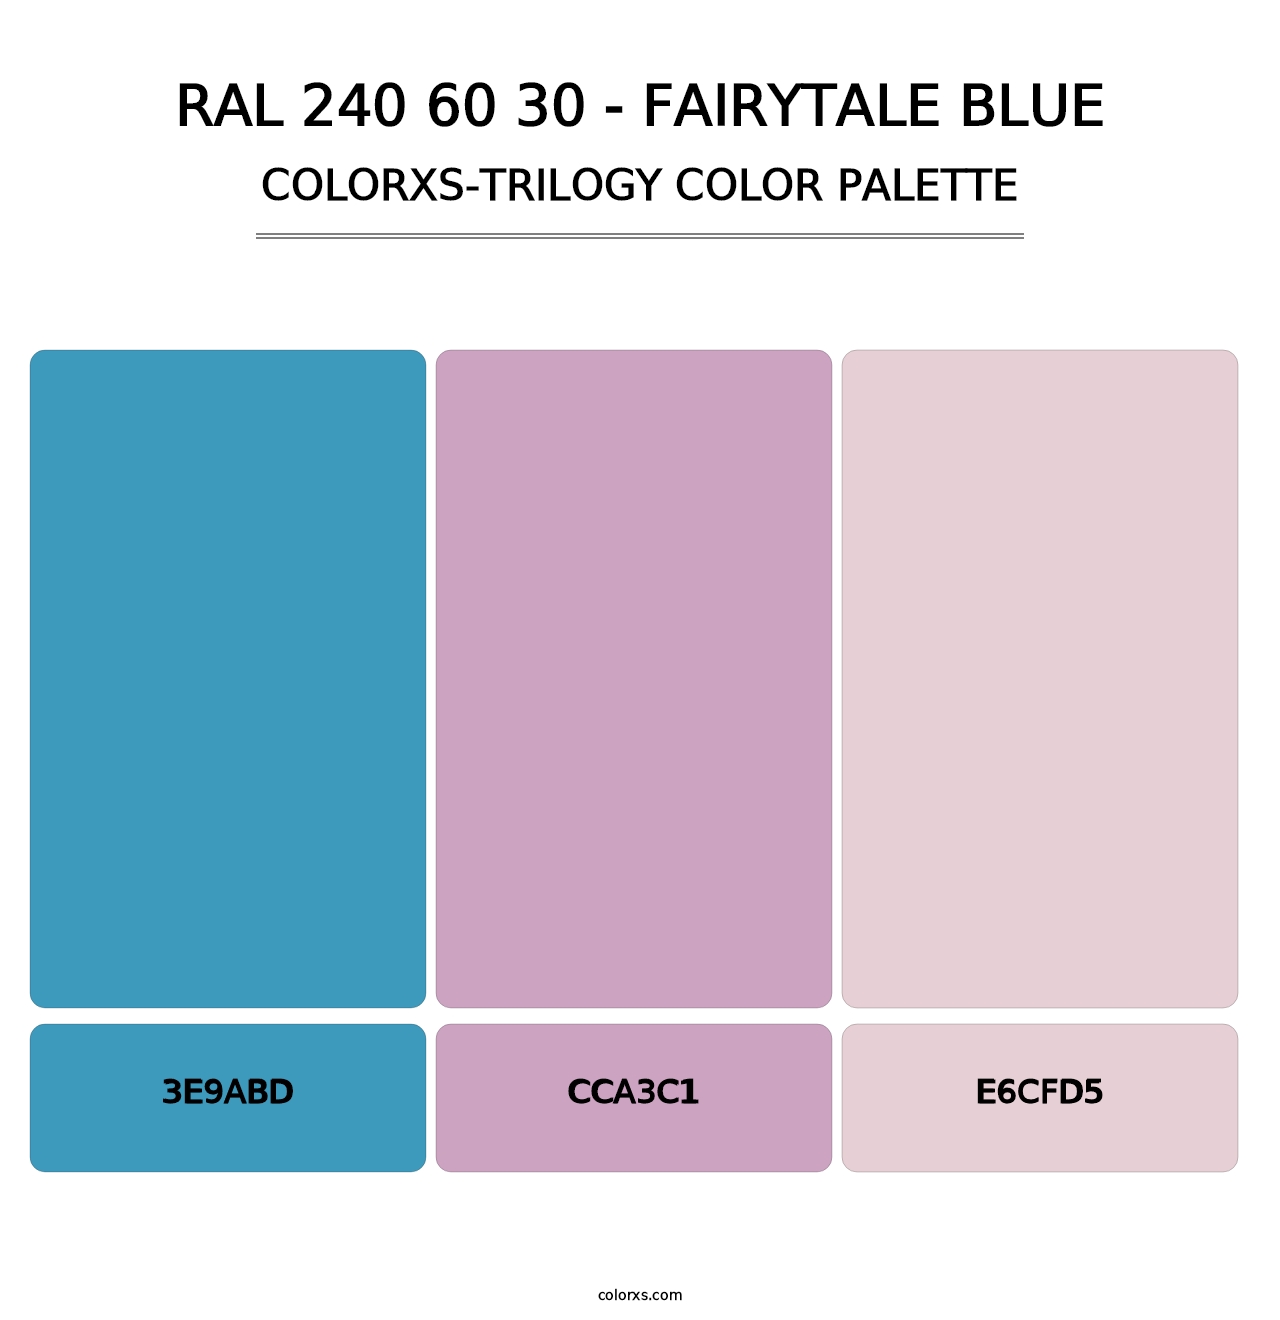 RAL 240 60 30 - Fairytale Blue - Colorxs Trilogy Palette